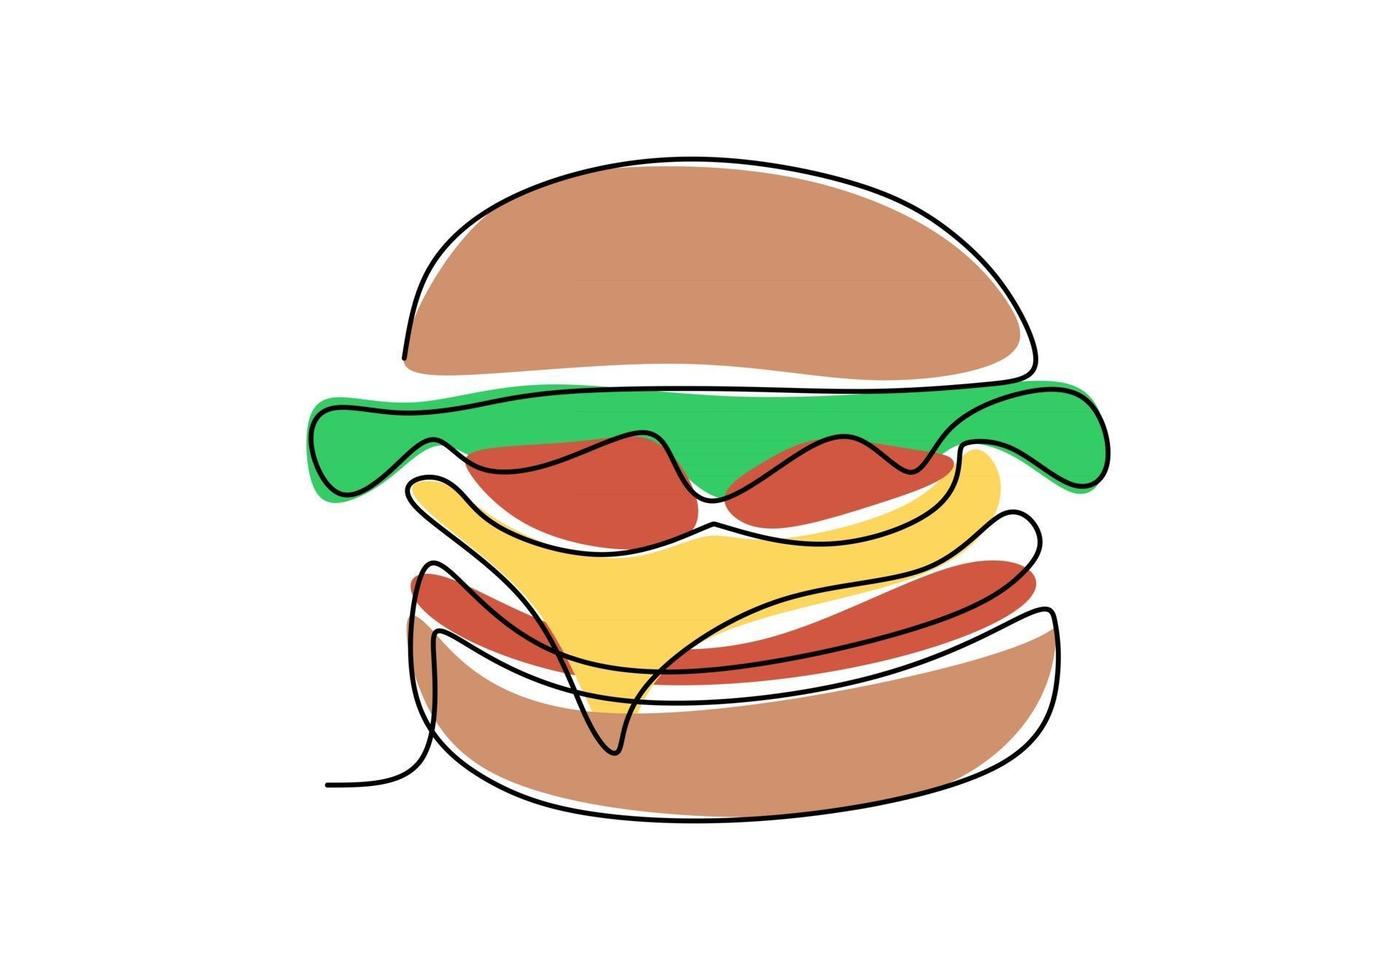 única linha contínua de hambúrguer. grande hambúrguer fast food em um estilo de linha isolado no fundo branco. vetor